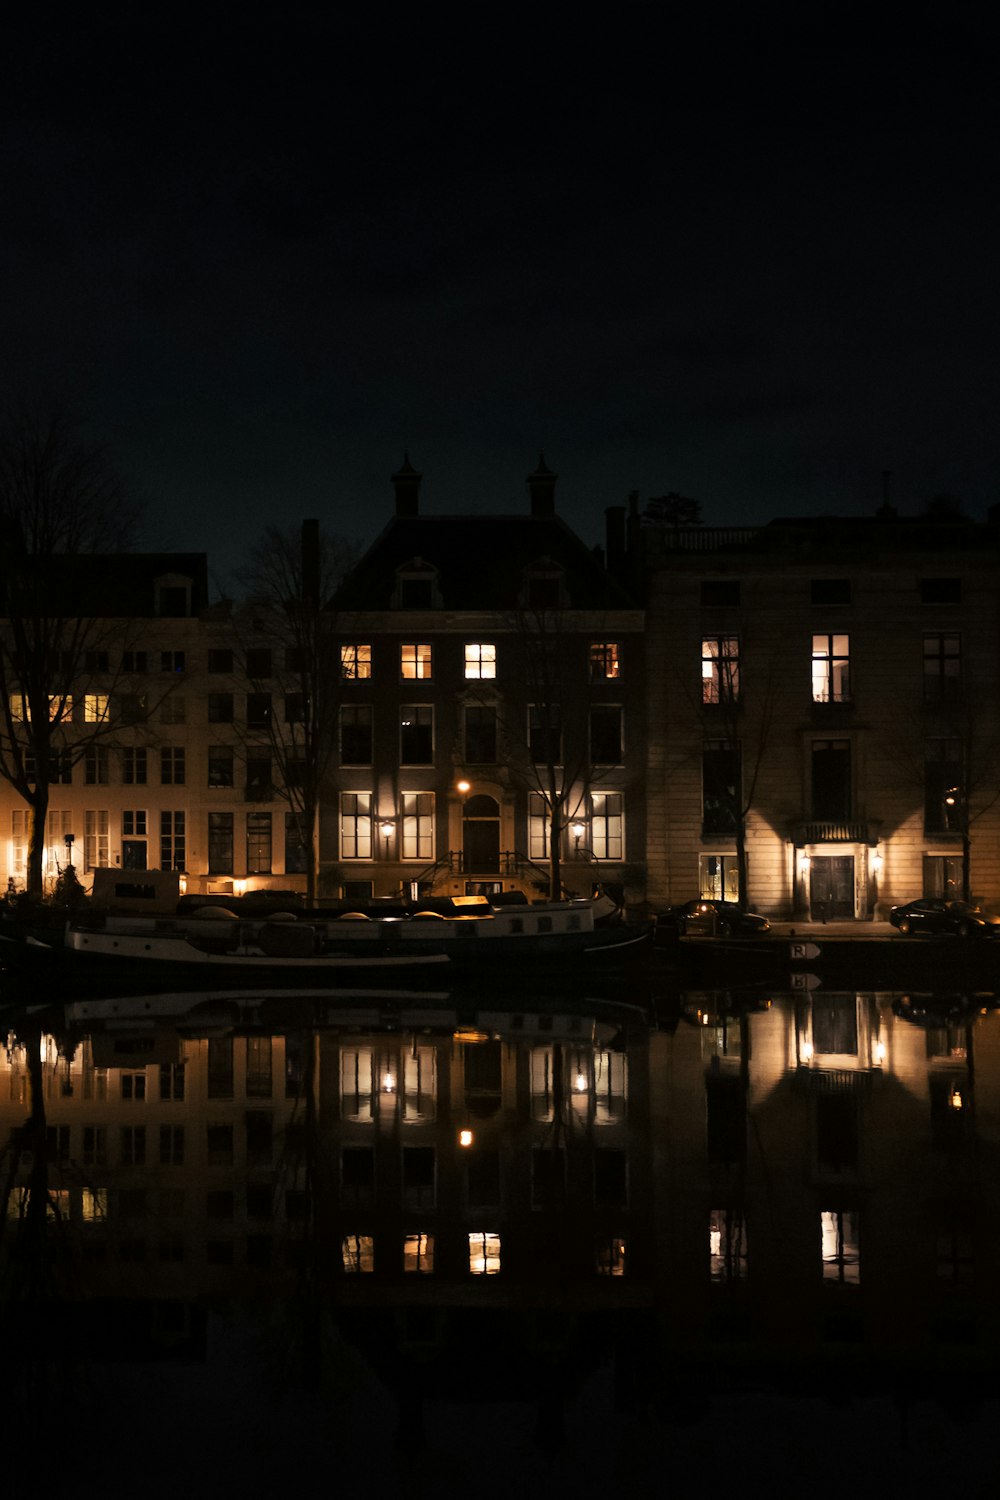 beleuchtetes Gebäude in der Nähe von Gewässern während der Nachtzeit